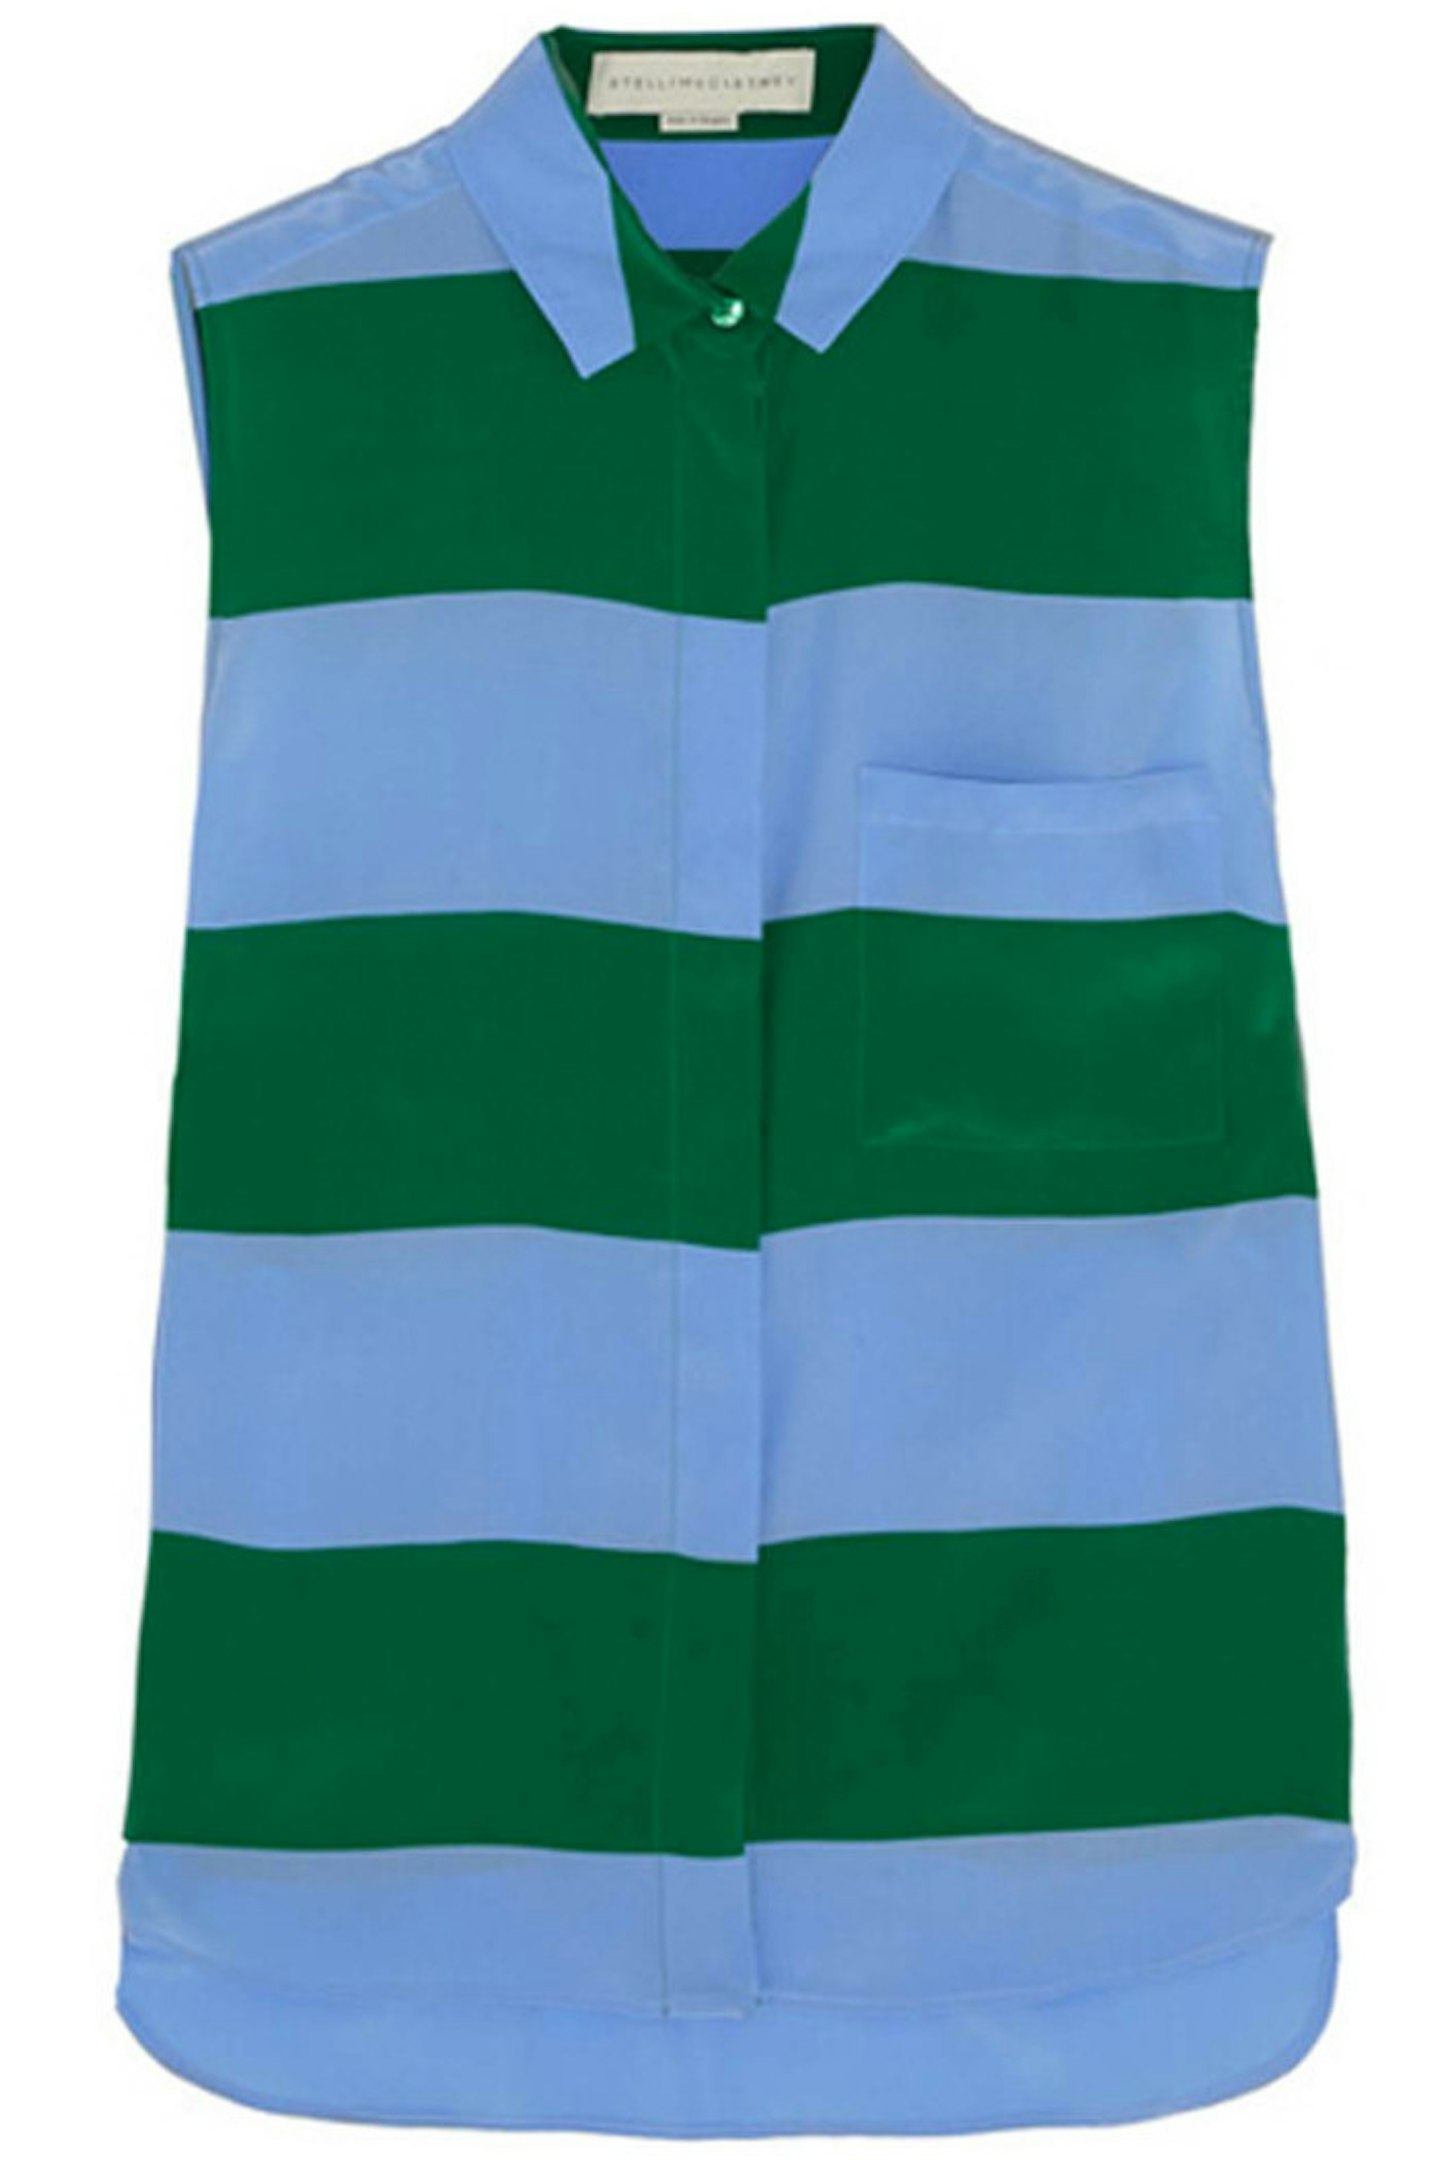 47. Blue and green sleeveless shirt, £525, Stella McCartney at Net-A-Porter